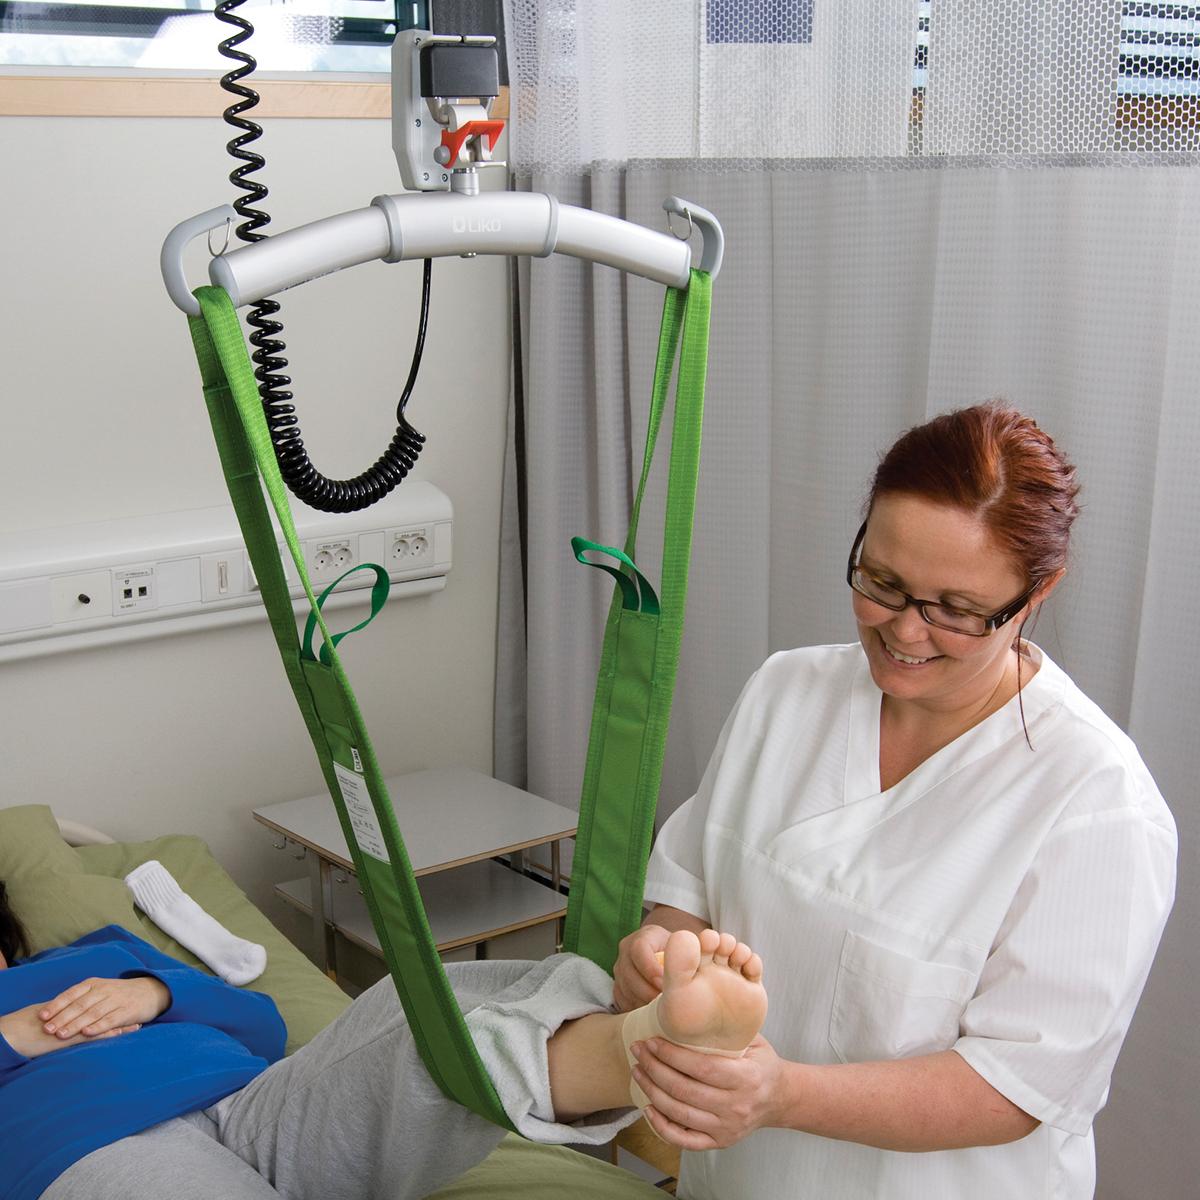 อุปกรณ์ช่วยพยุงตัว MultiStrap™ สีเขียว ใช้พยุงเท้าข้างซ้ายของผู้ป่วยที่เอนนอนเพื่อพันผ้ายืดโดยผู้ดูแลหญิงที่สวมแว่น